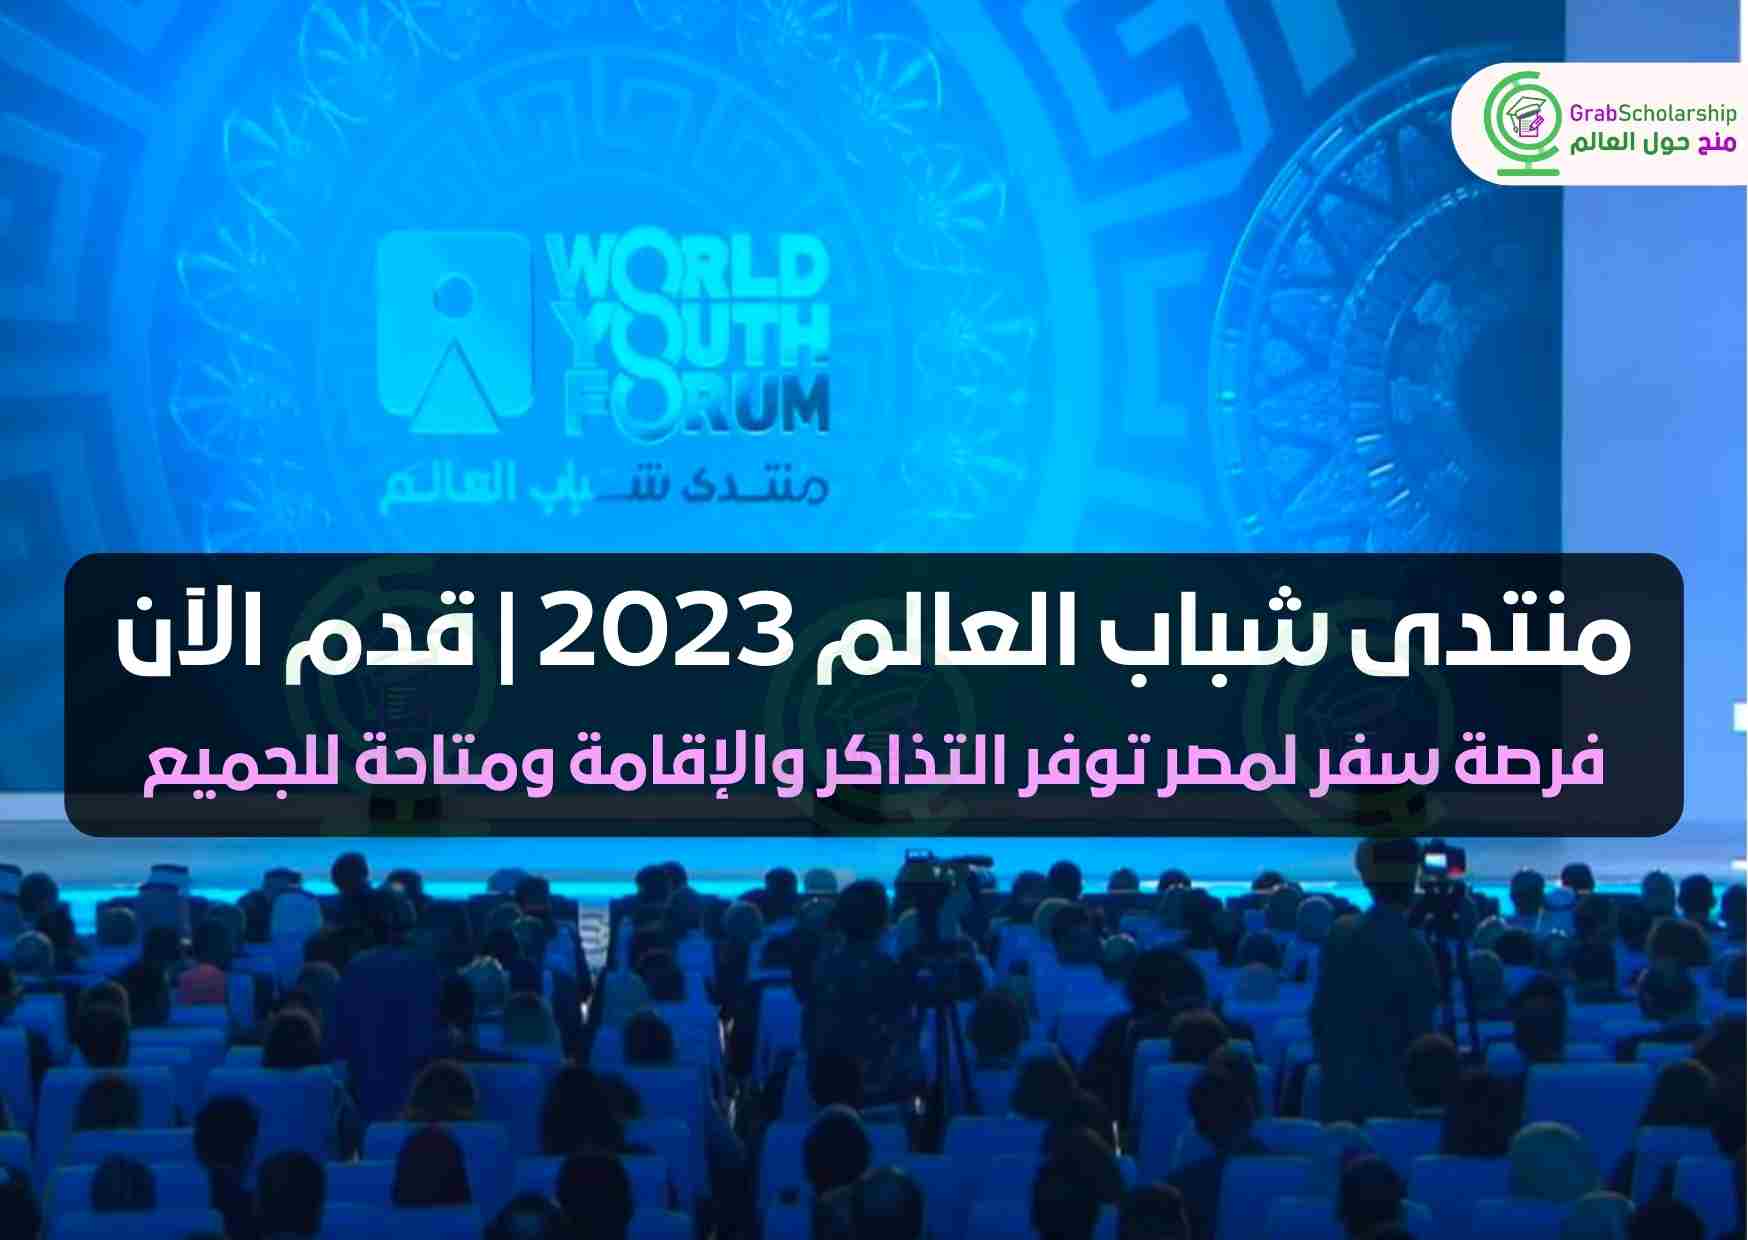 منتدى شباب العالم 2023 | قدم الآن | WYF